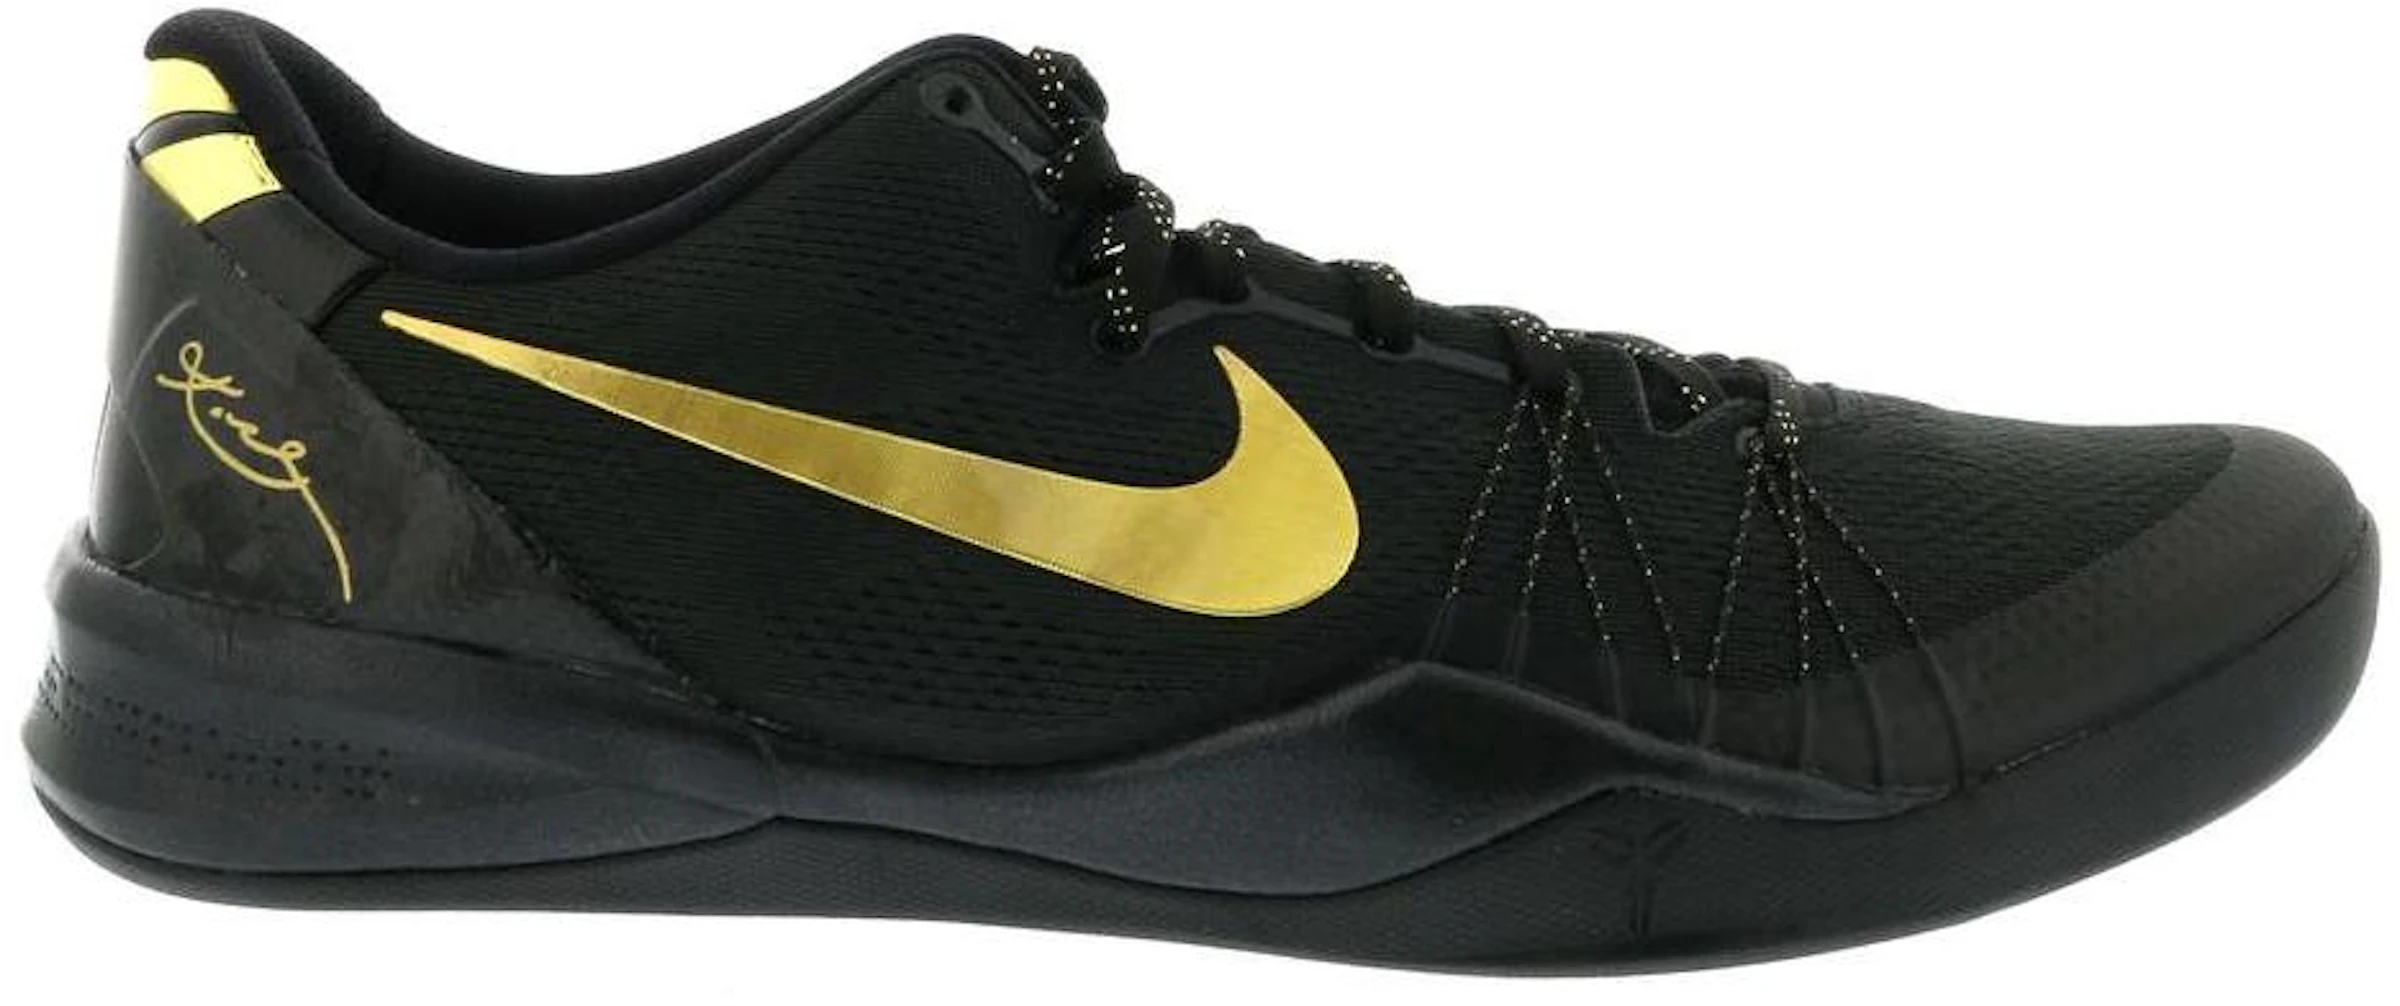 Compra Nike Kobe 8 Calzado y sneakers nuevos -